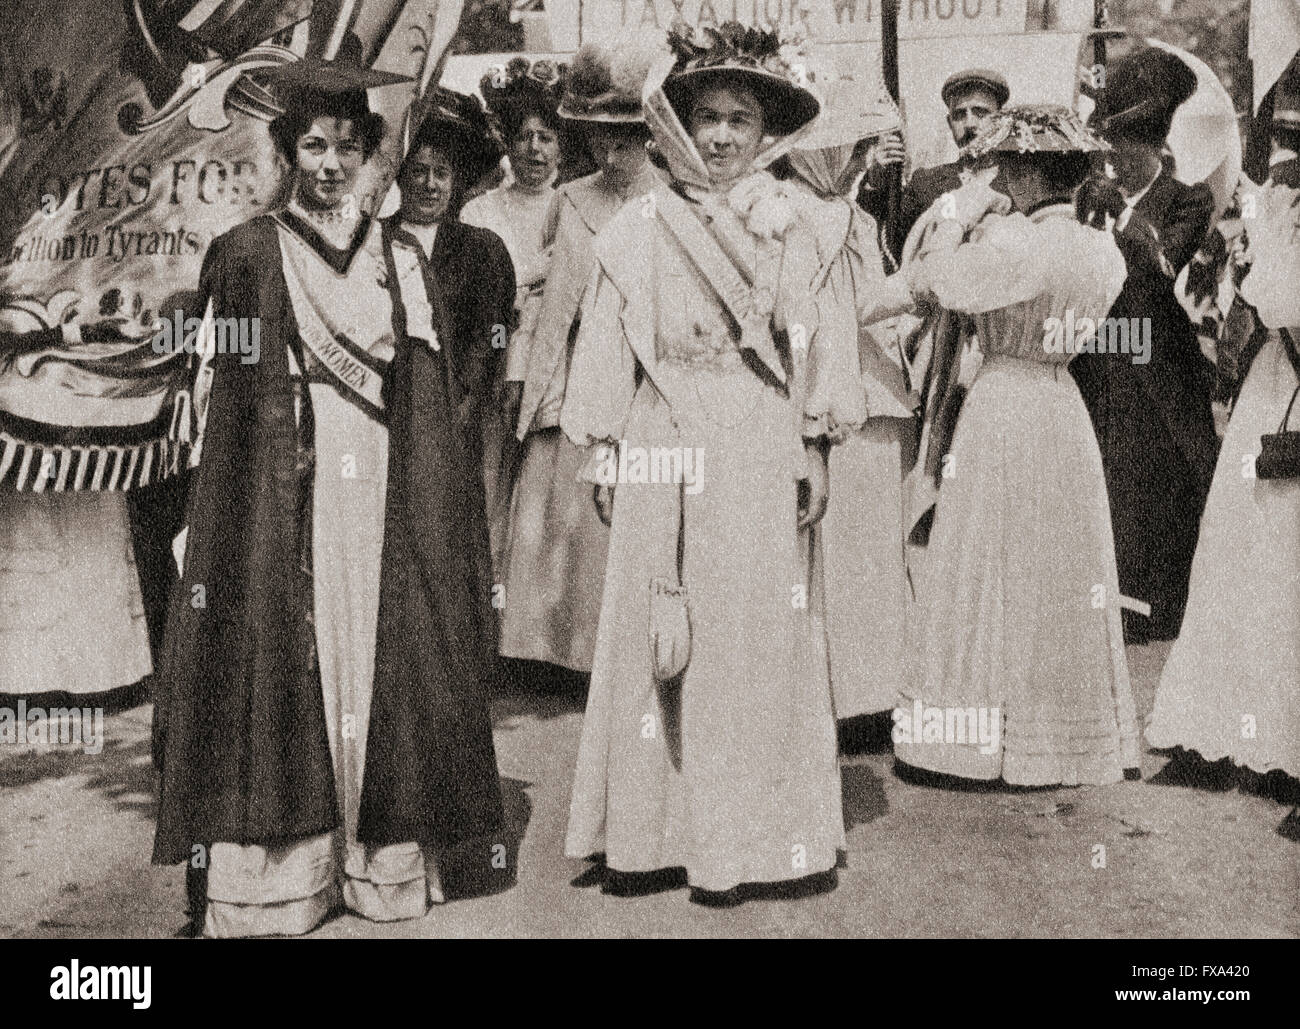 Lady Emmeline Pethick-Lawrence, verließ 1867 – 1954.  Britische Frauenrechtlerin.  Emmeline Pankhurst, geb. Goulden, 1858-1928, rechts.  Britischer politischer Aktivist und Führer der britischen Suffragetten-Bewegung. Stockfoto